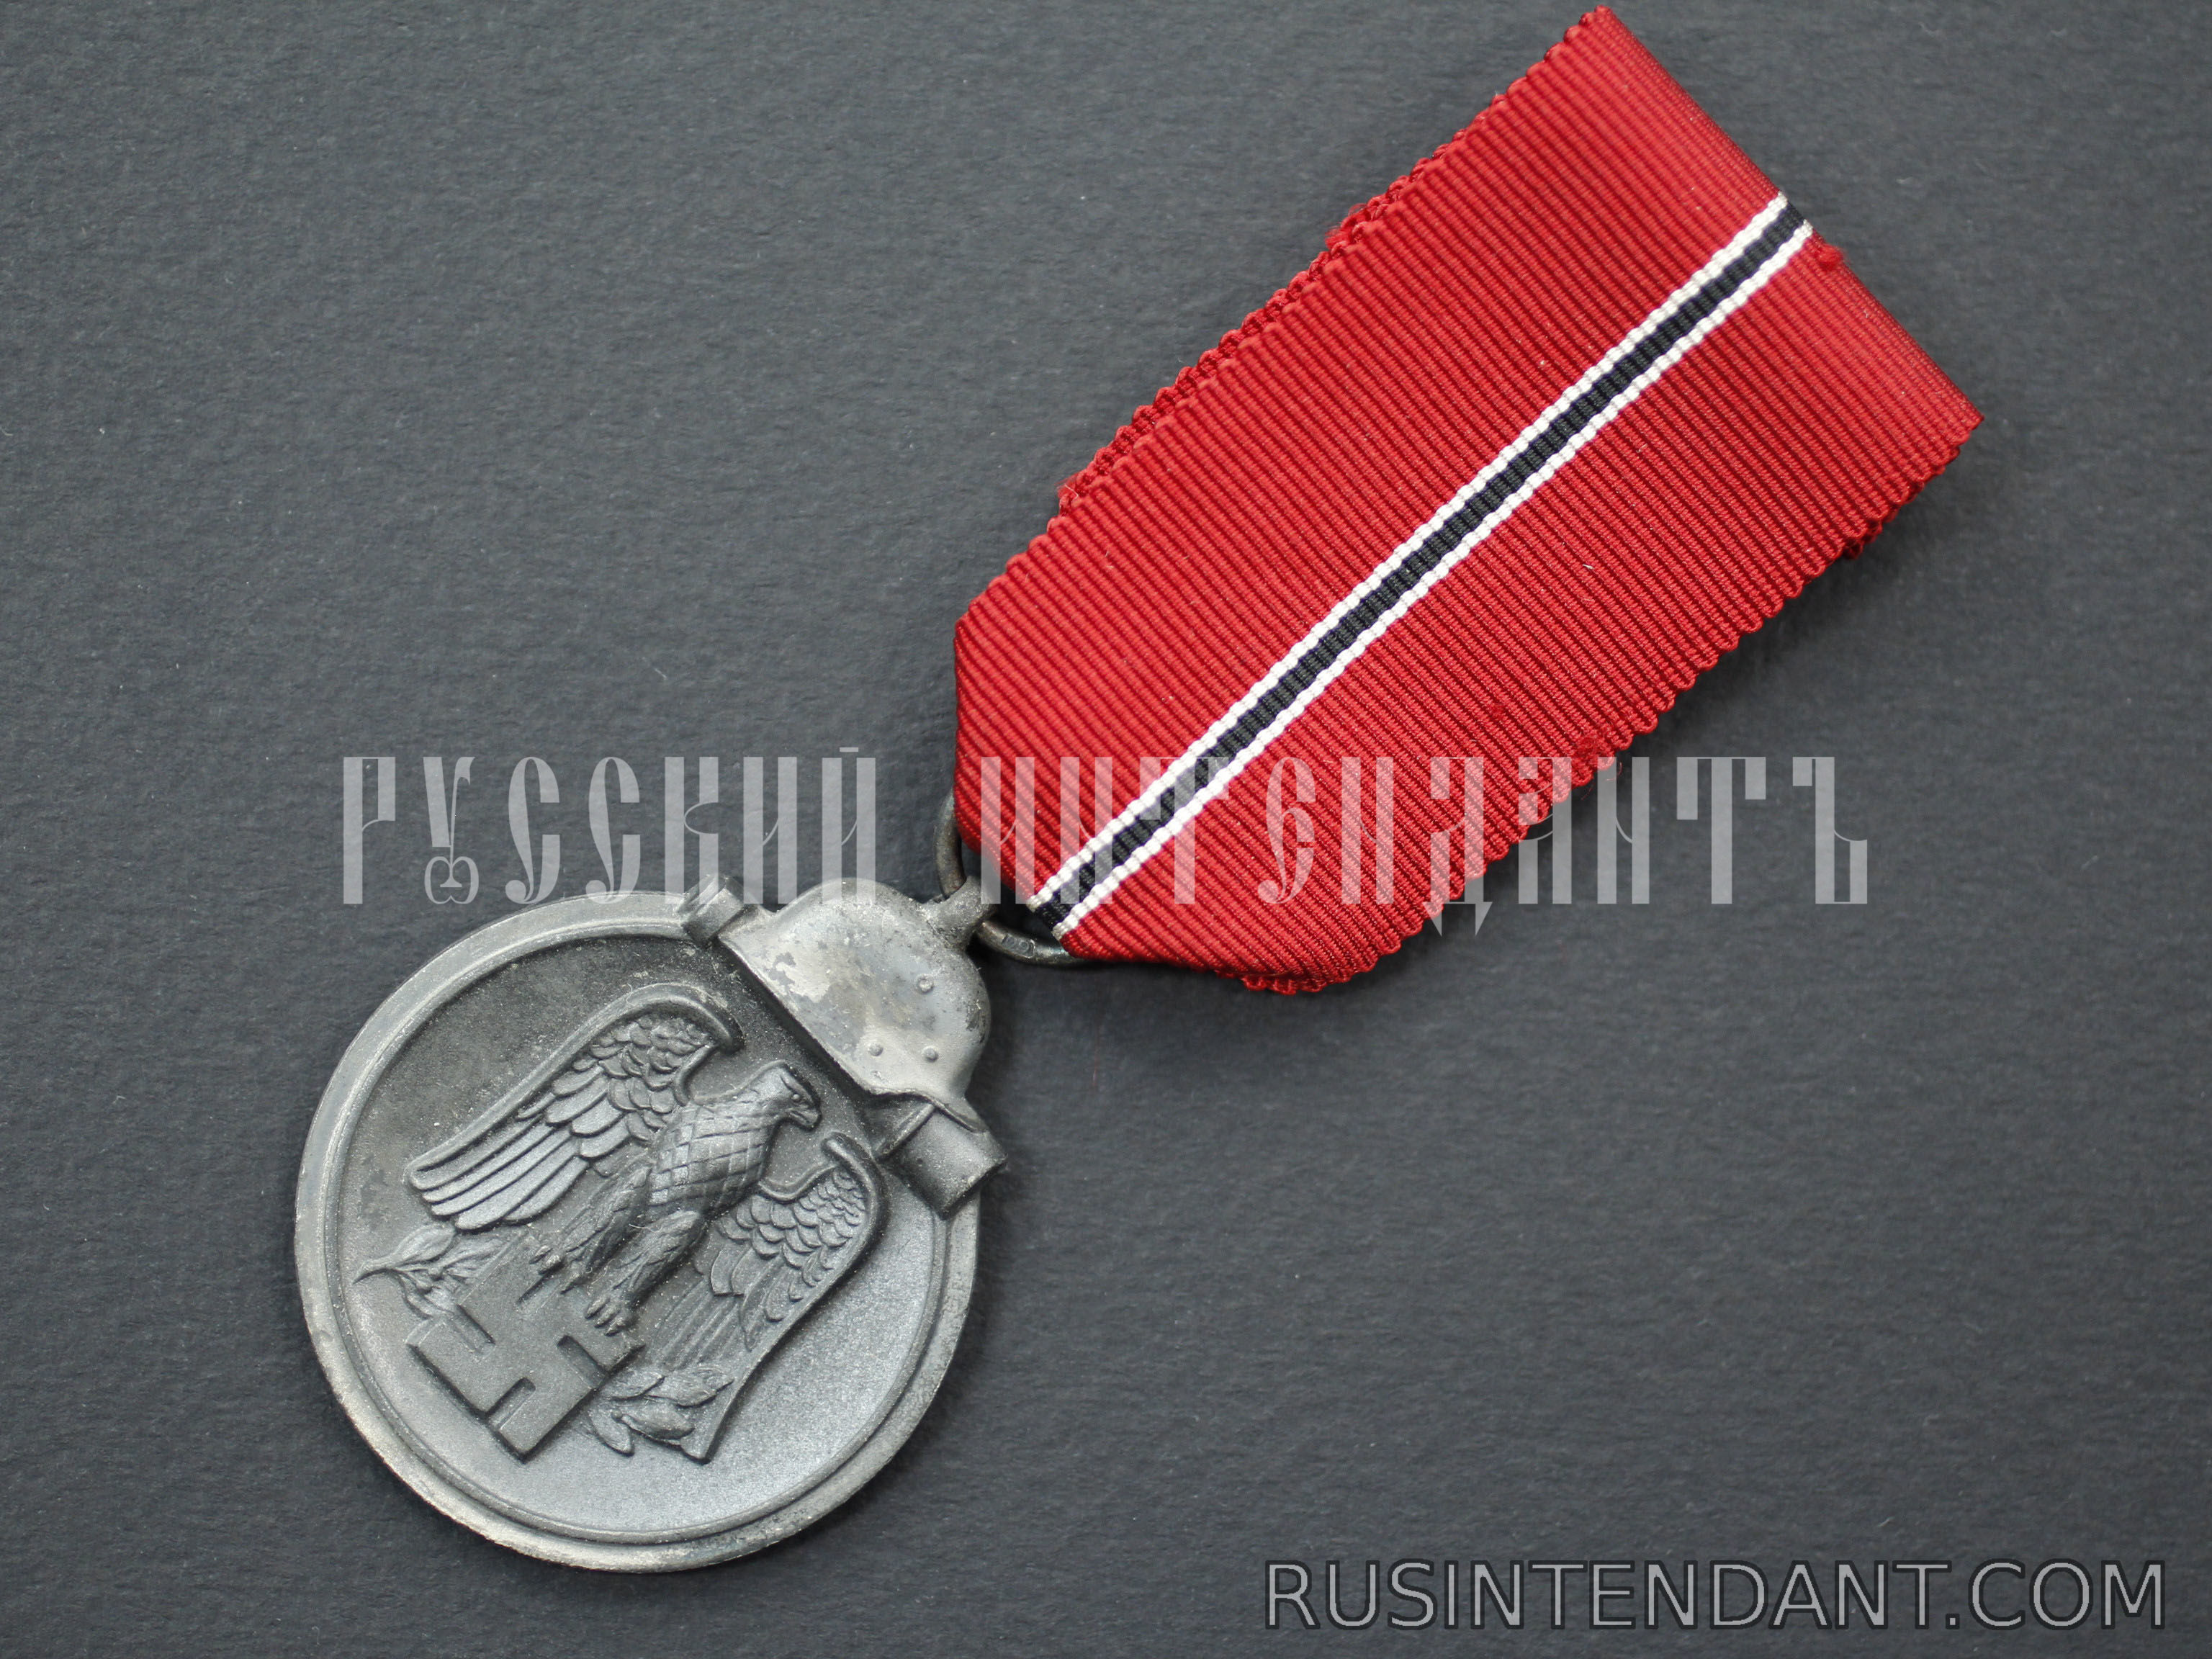 Фото 3: Медаль "За зимнее сражение на Востоке 1941/42" 